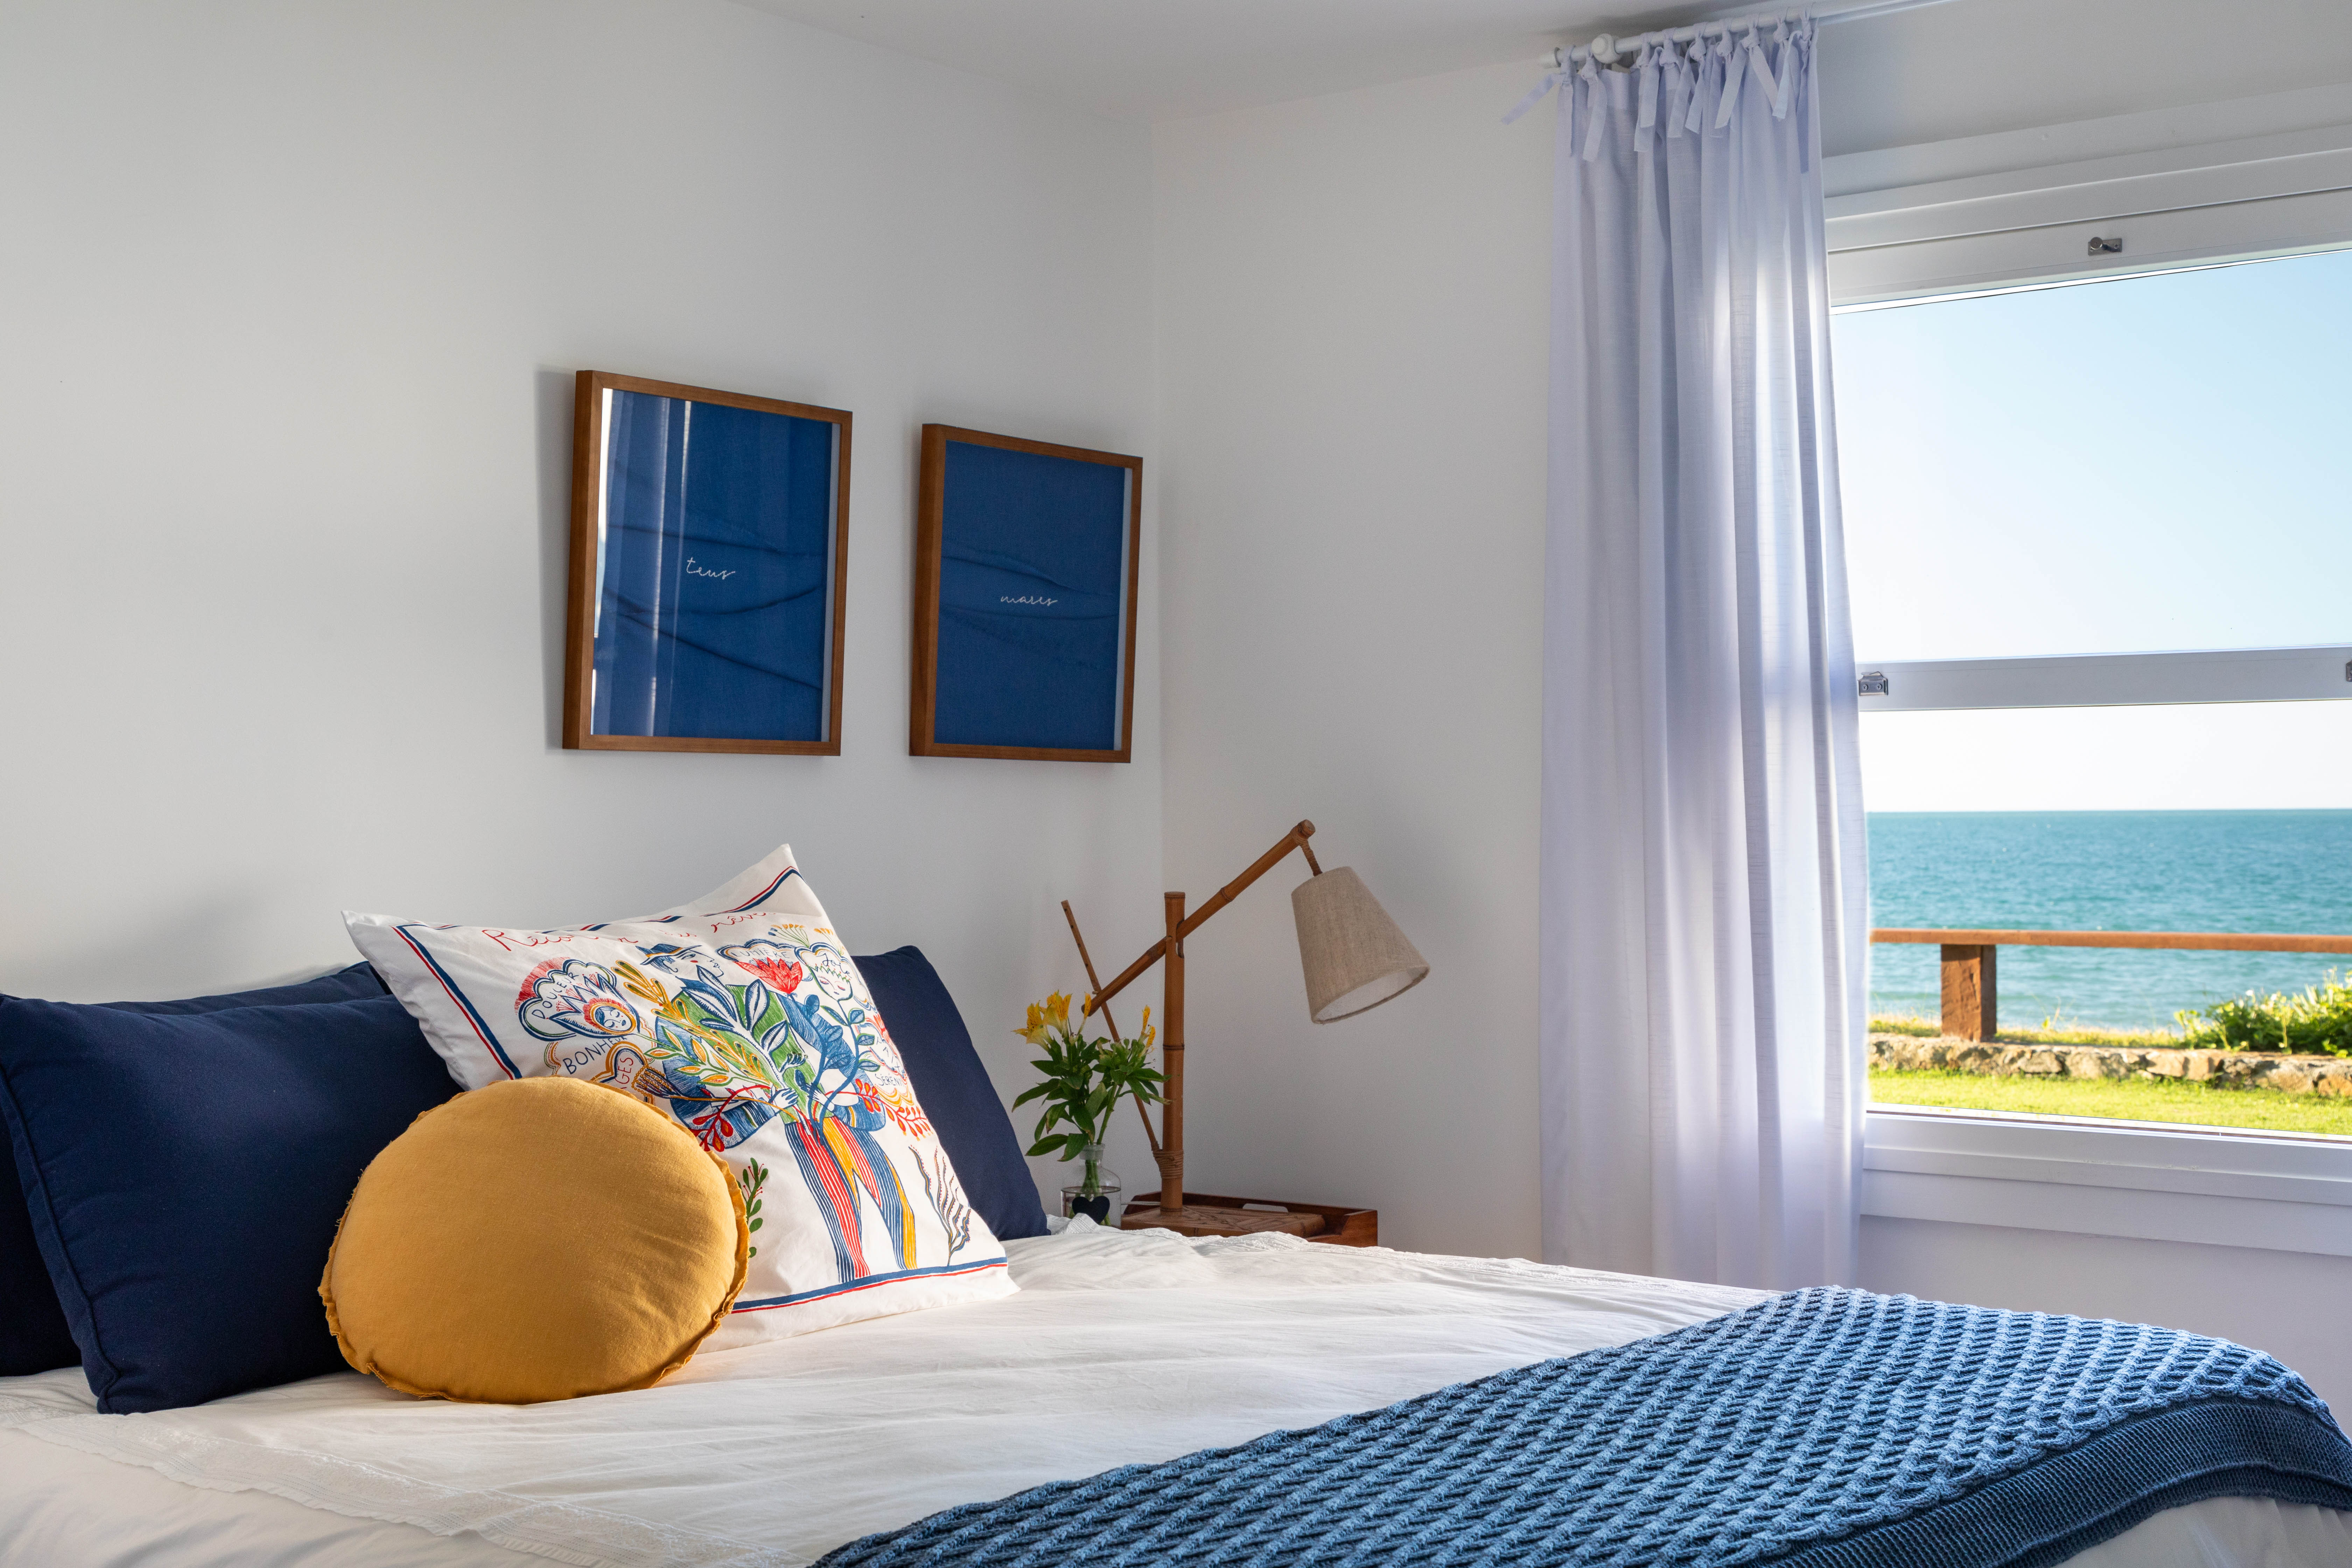 Projeto de Brise Arquitetura. Na foto, quarto com cama de casal, cortina branca e vista para praia.